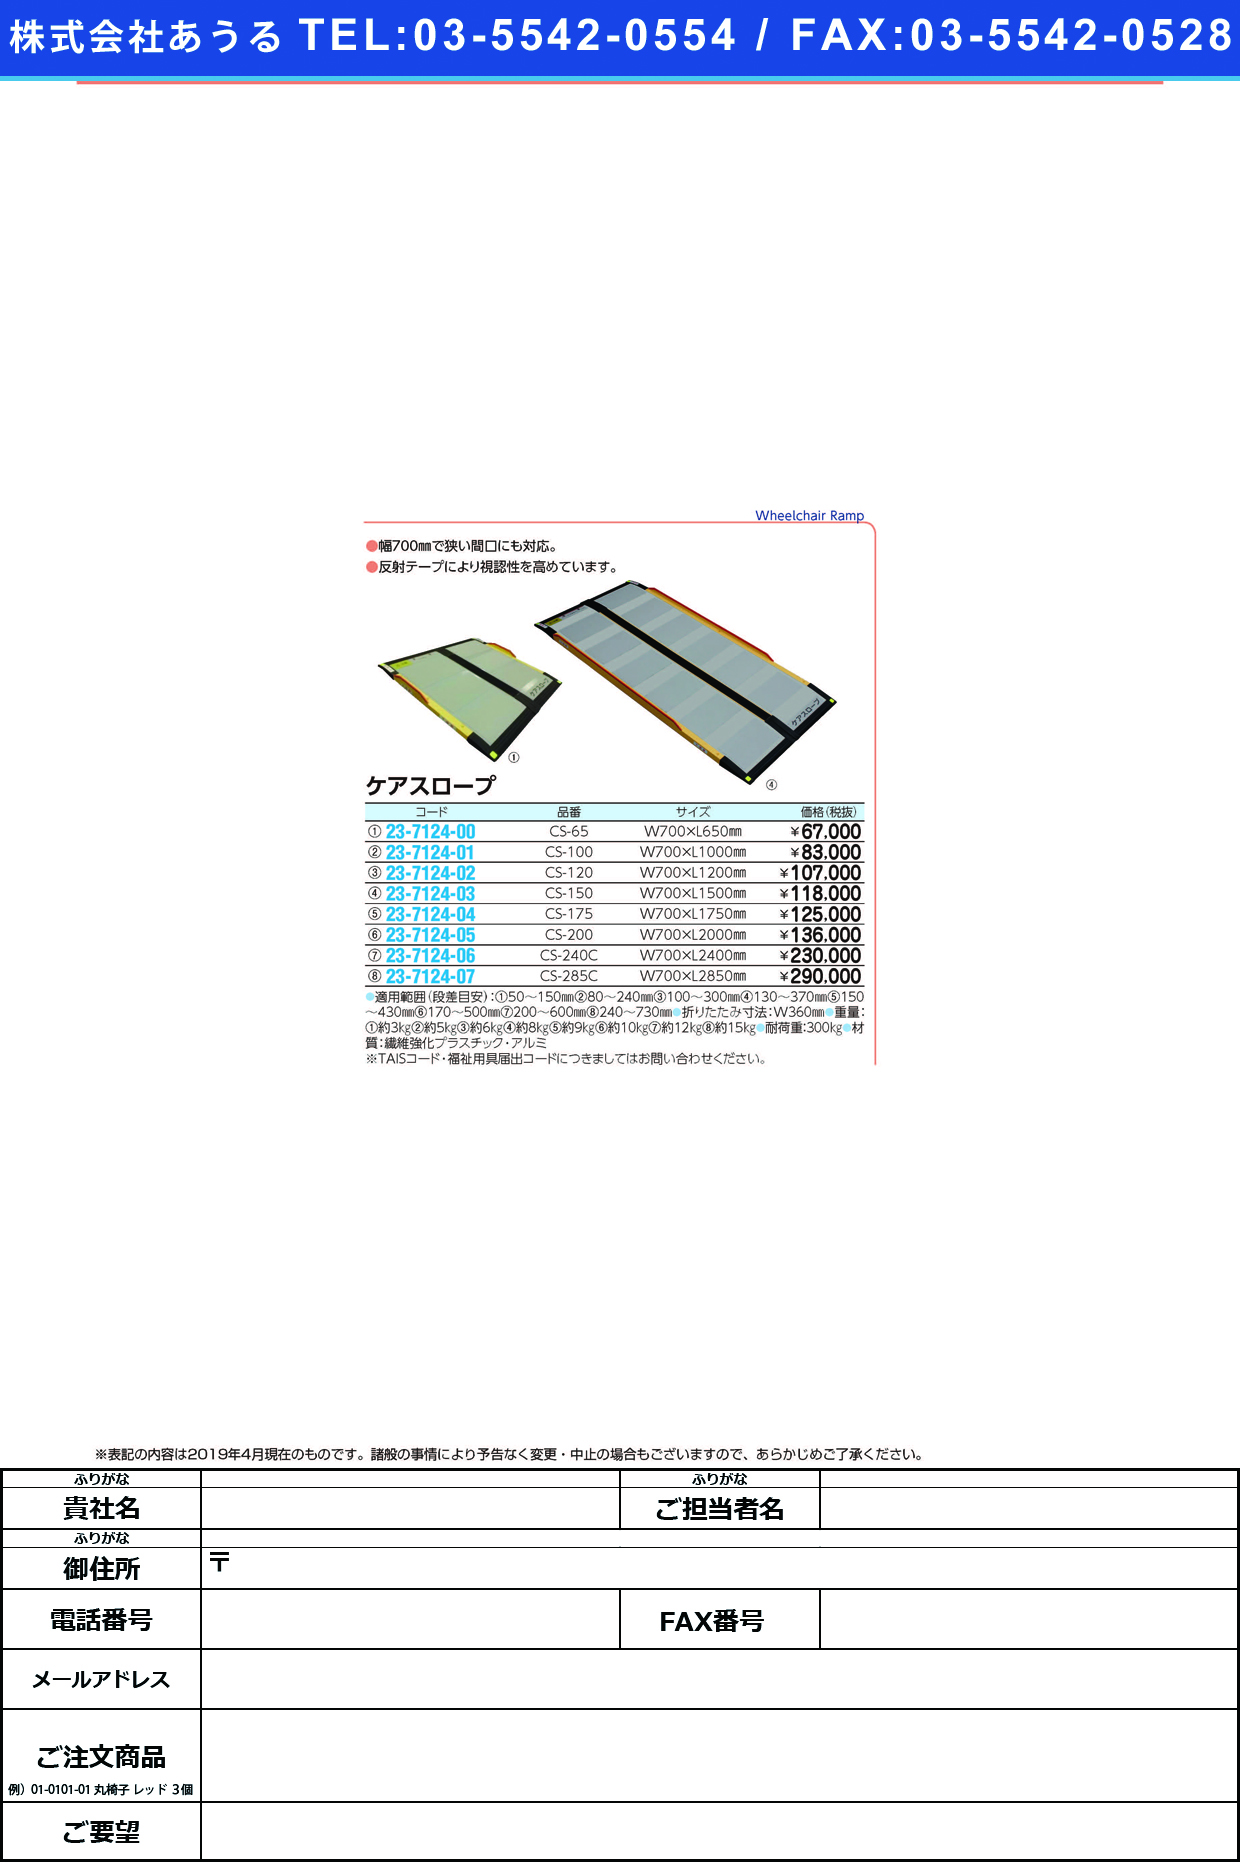 (23-7124-05)ケアスロープ CS-200(W700XL2000MM) ｹｱｽﾛｰﾌﾟ【1台単位】【2019年カタログ商品】